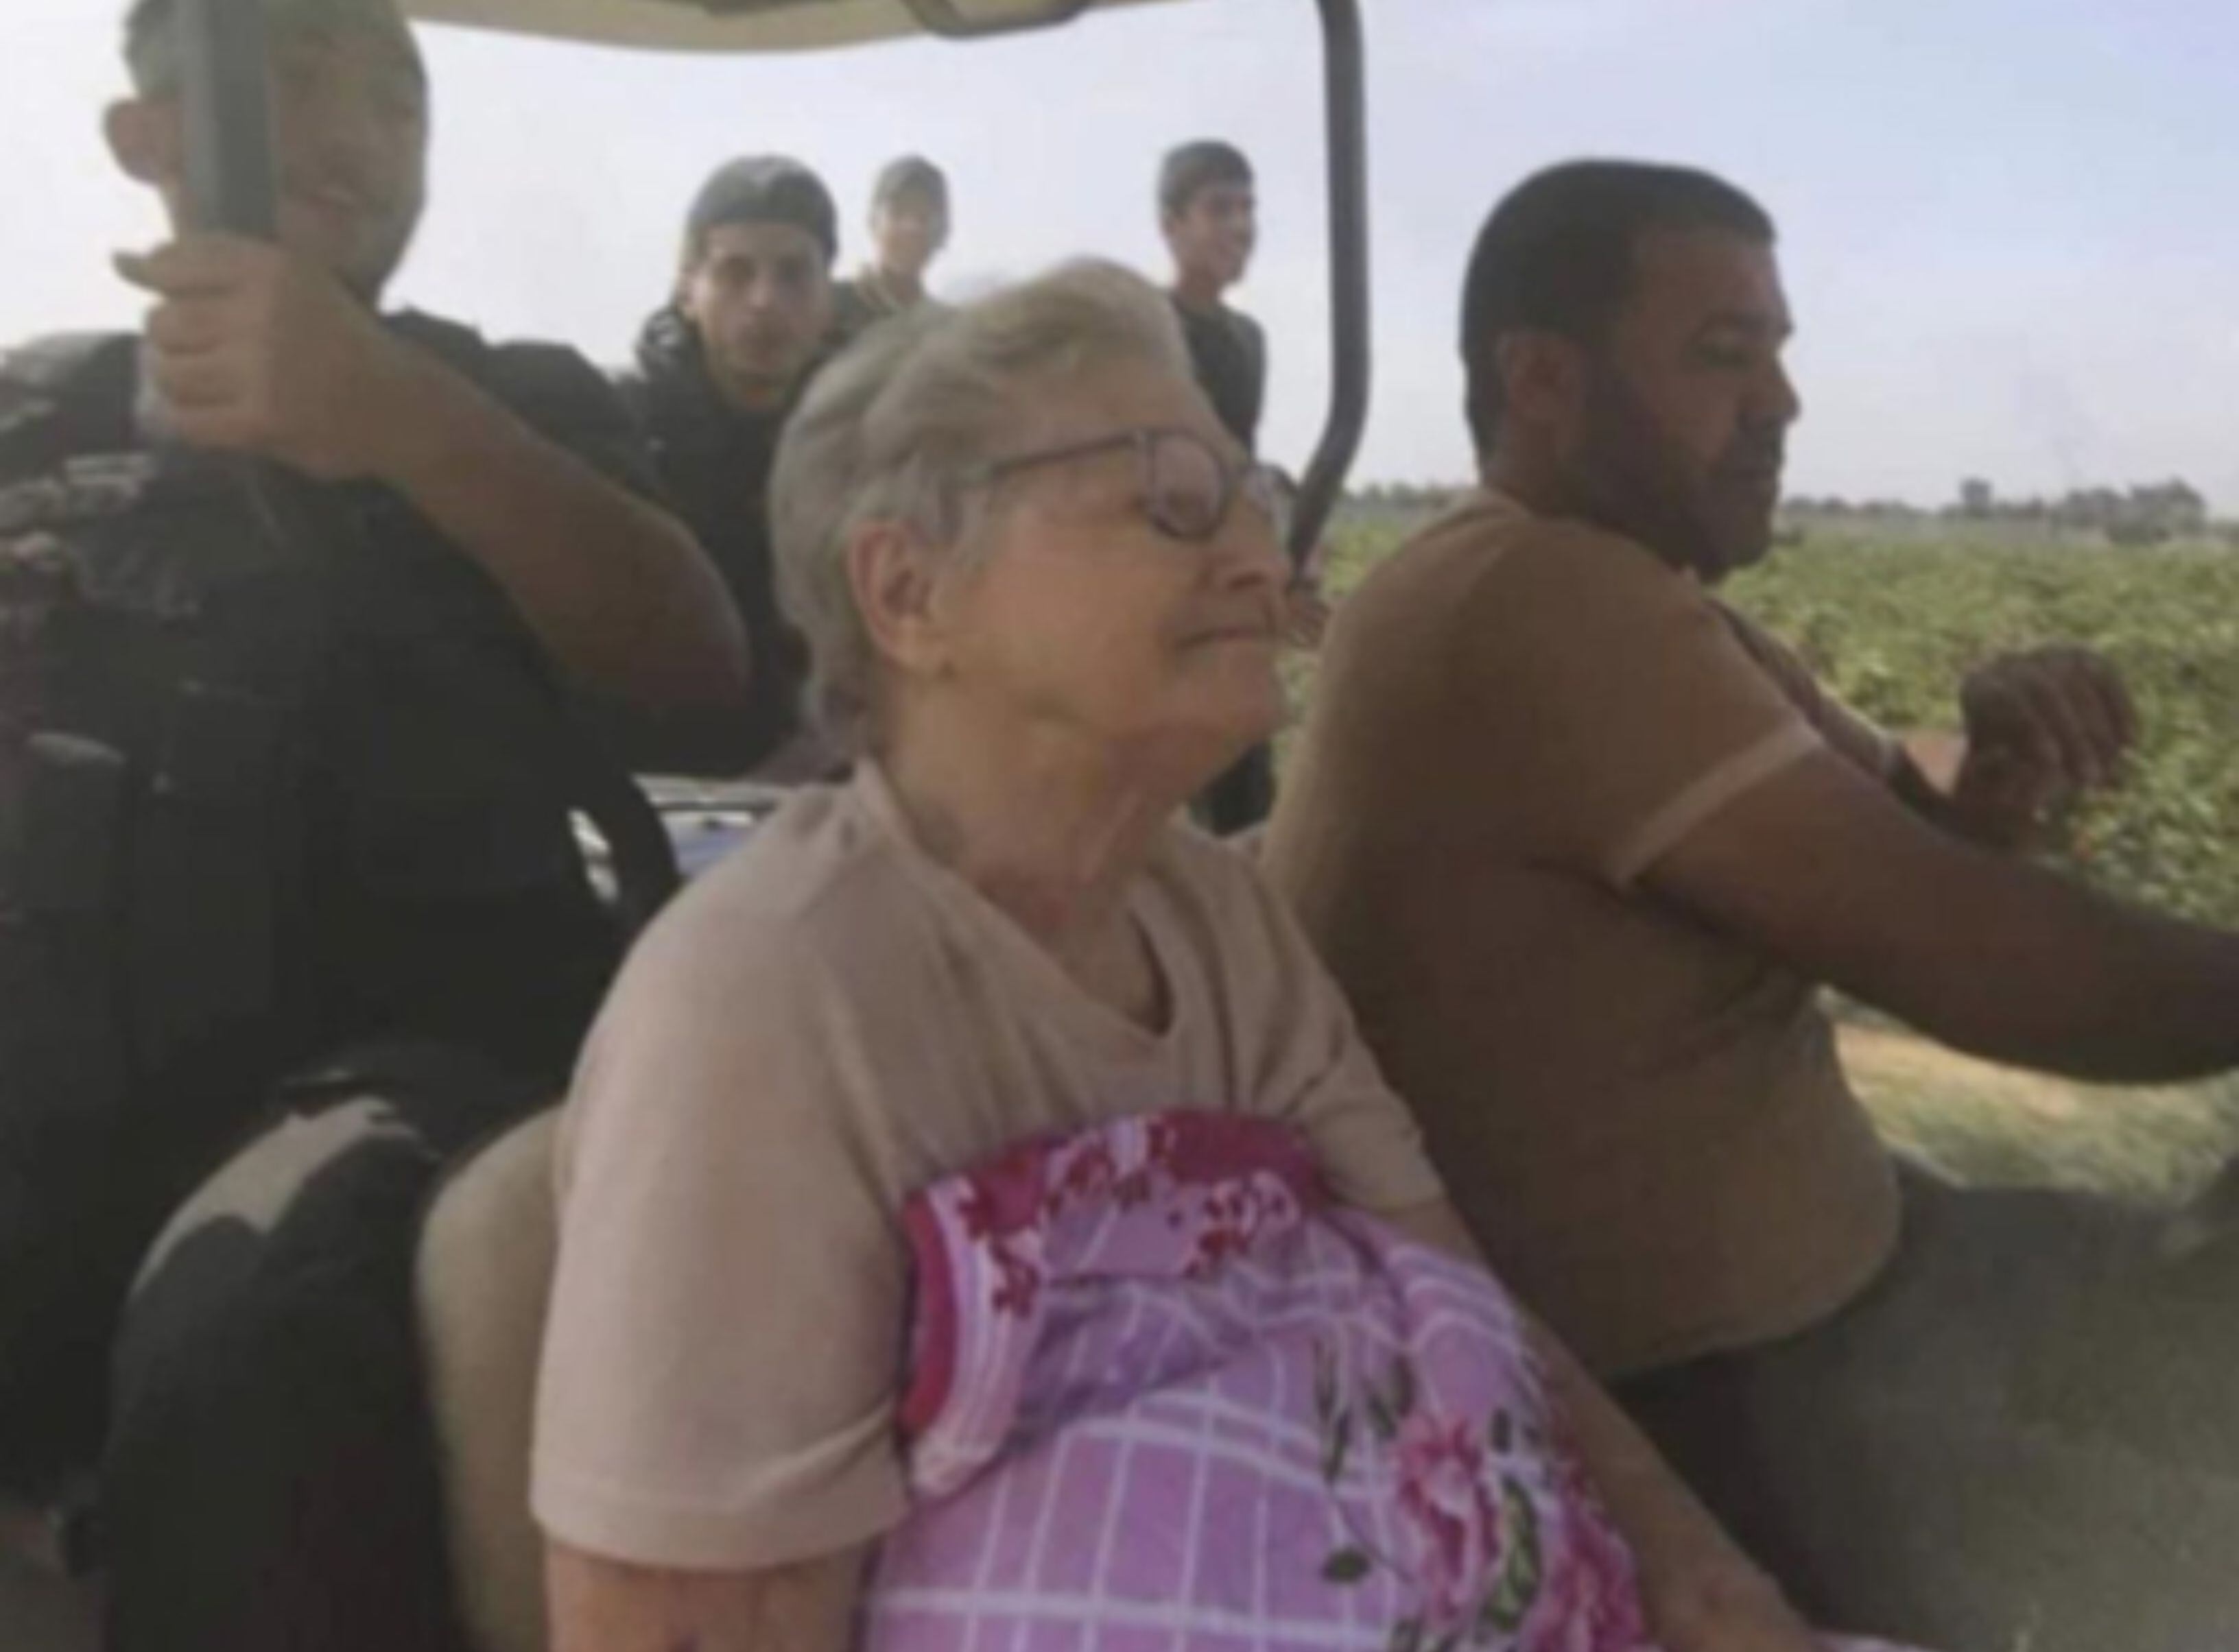 La conmovedora historia de abuela liberada por Hamás: “soy más fuerte que su maldad”